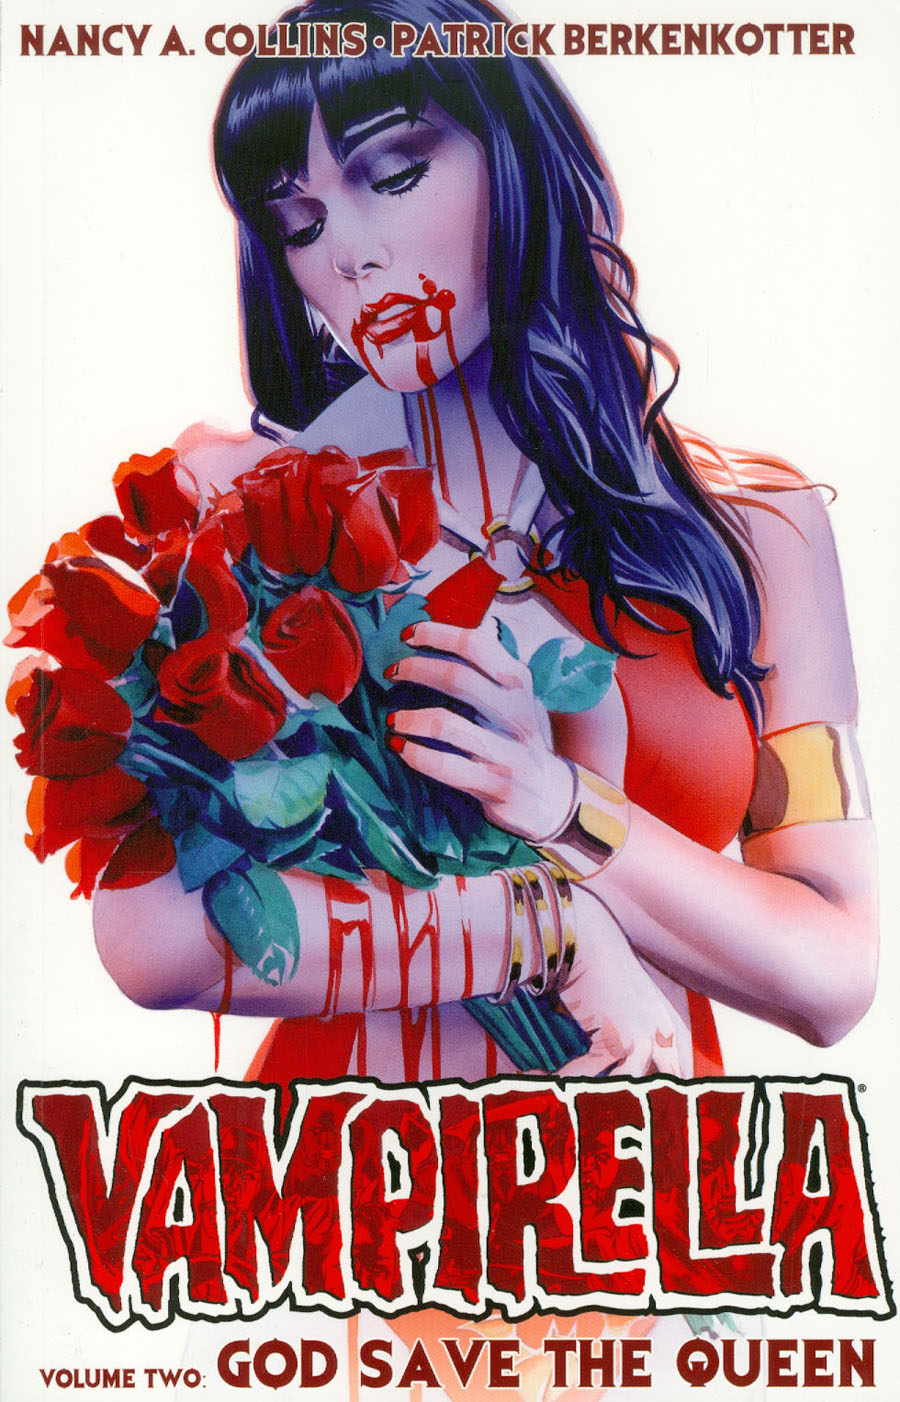 Vampirella (2014) Vol 2 God Save The Queen TP